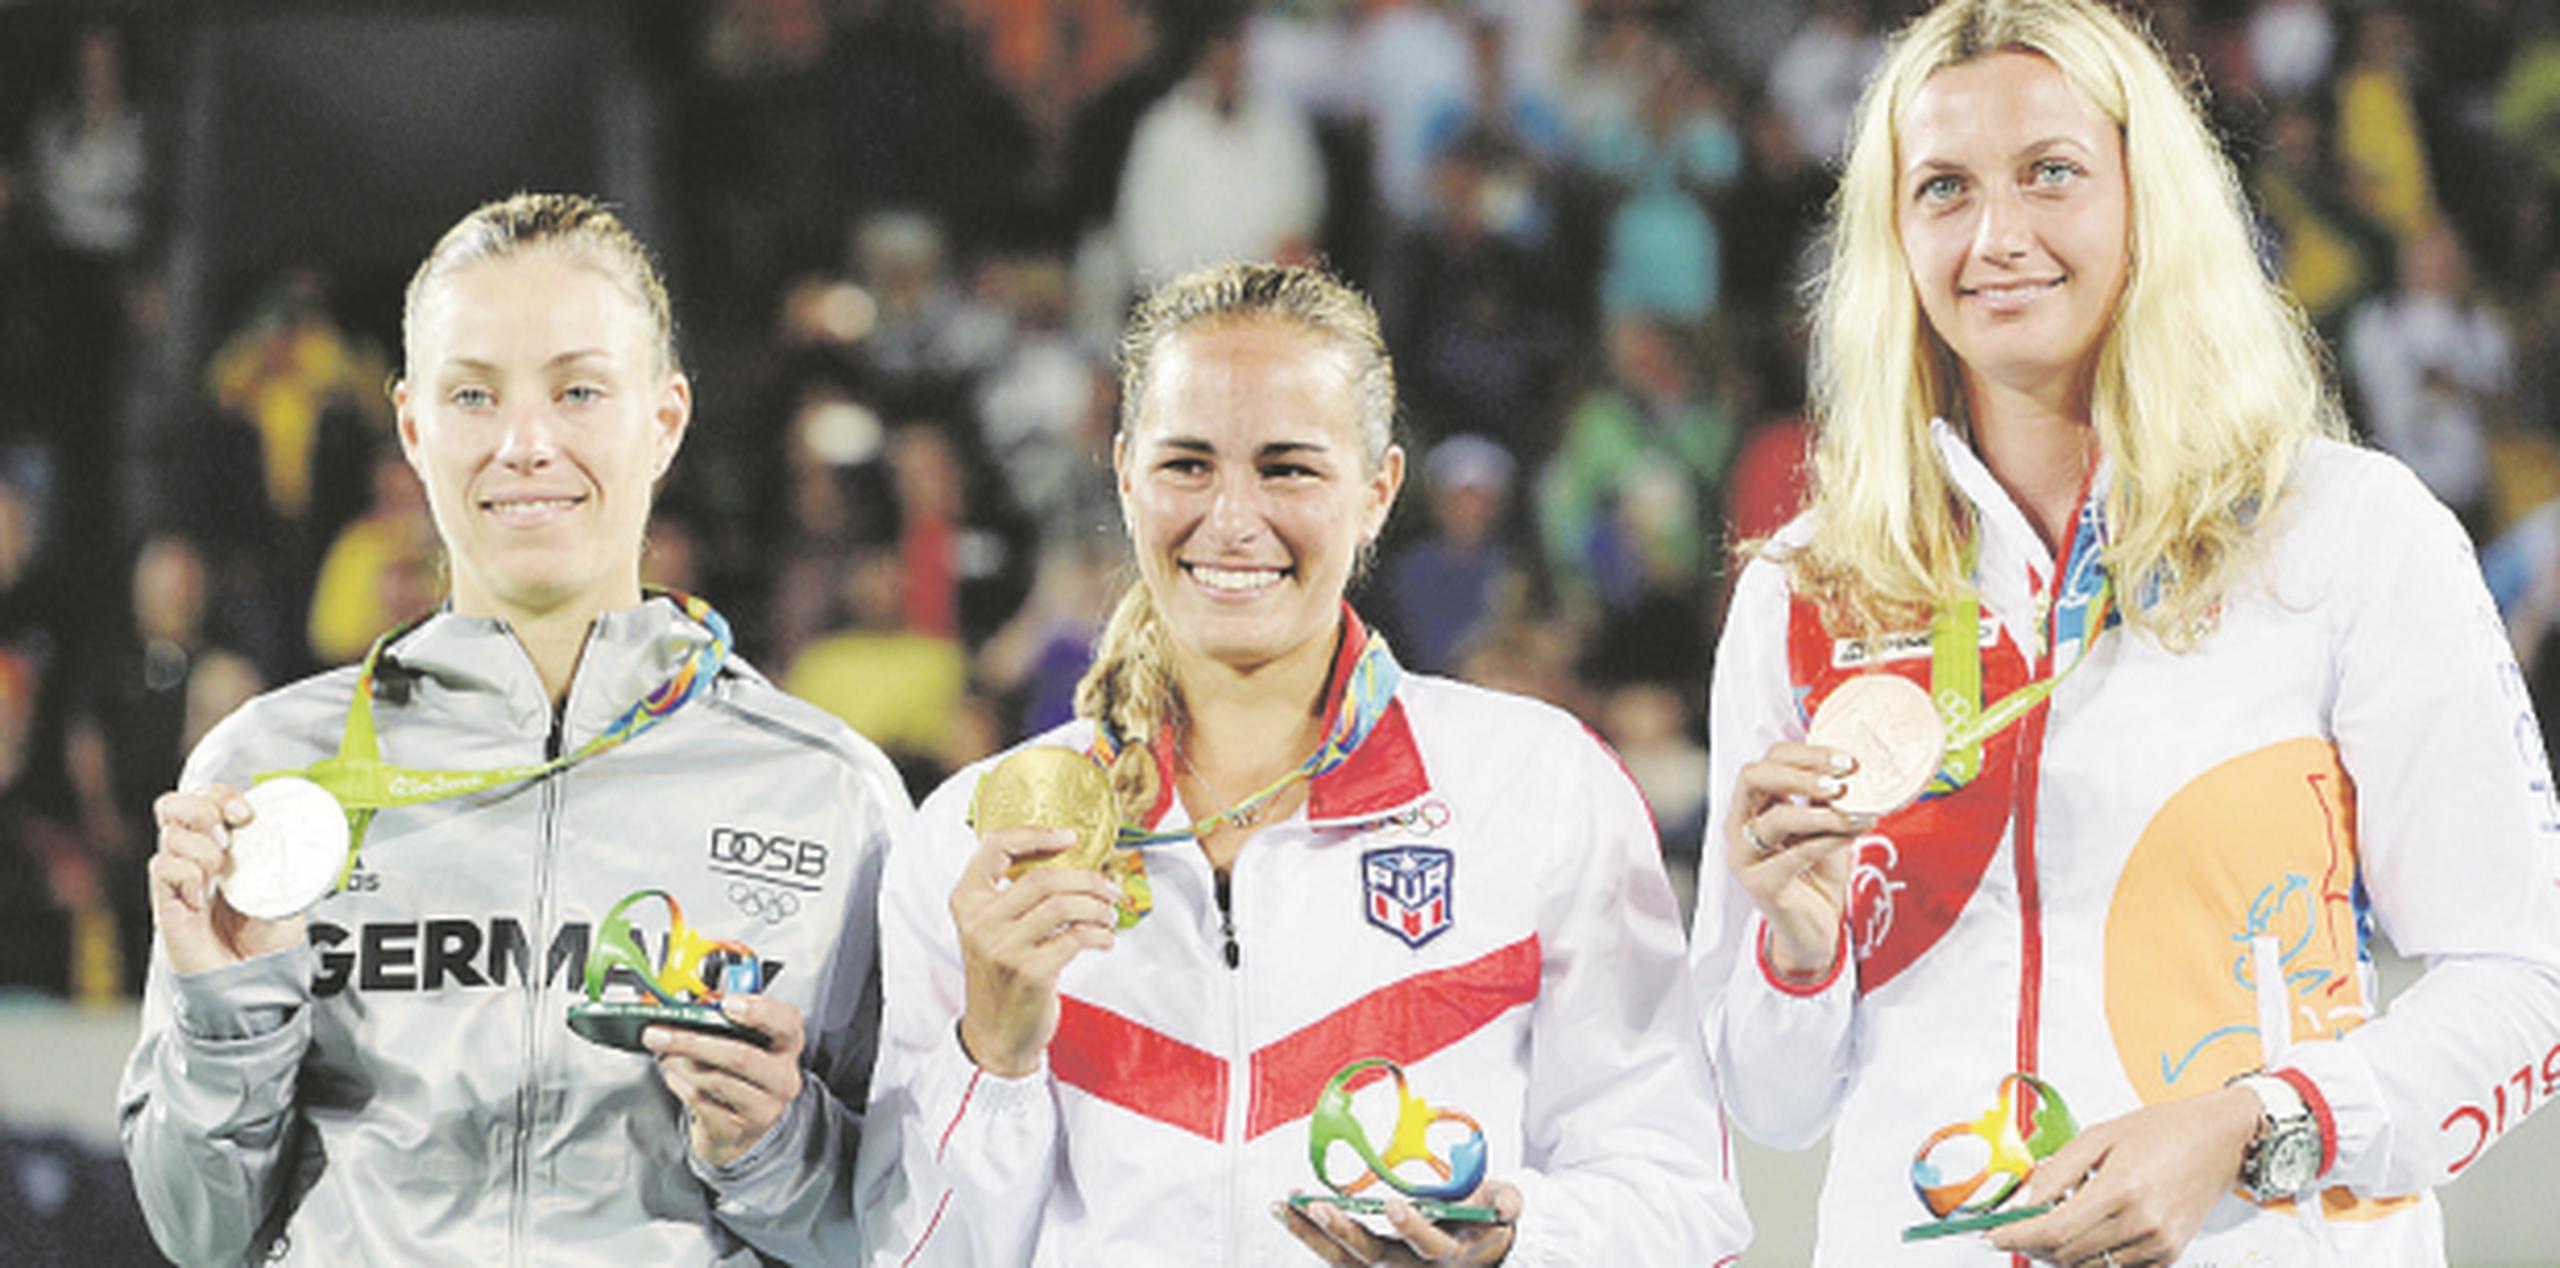 Mónica Puig, al centro, muestra su medalla de oro tras la premiación. Le acompañan, a la izquierda, Angelique Kerber, y Petra Kvitova, con sus respectivas medallas de plata y bronce. Ambas fueron superadas por Puig. (Archivo / andre.kang@gfrmedia.com)
